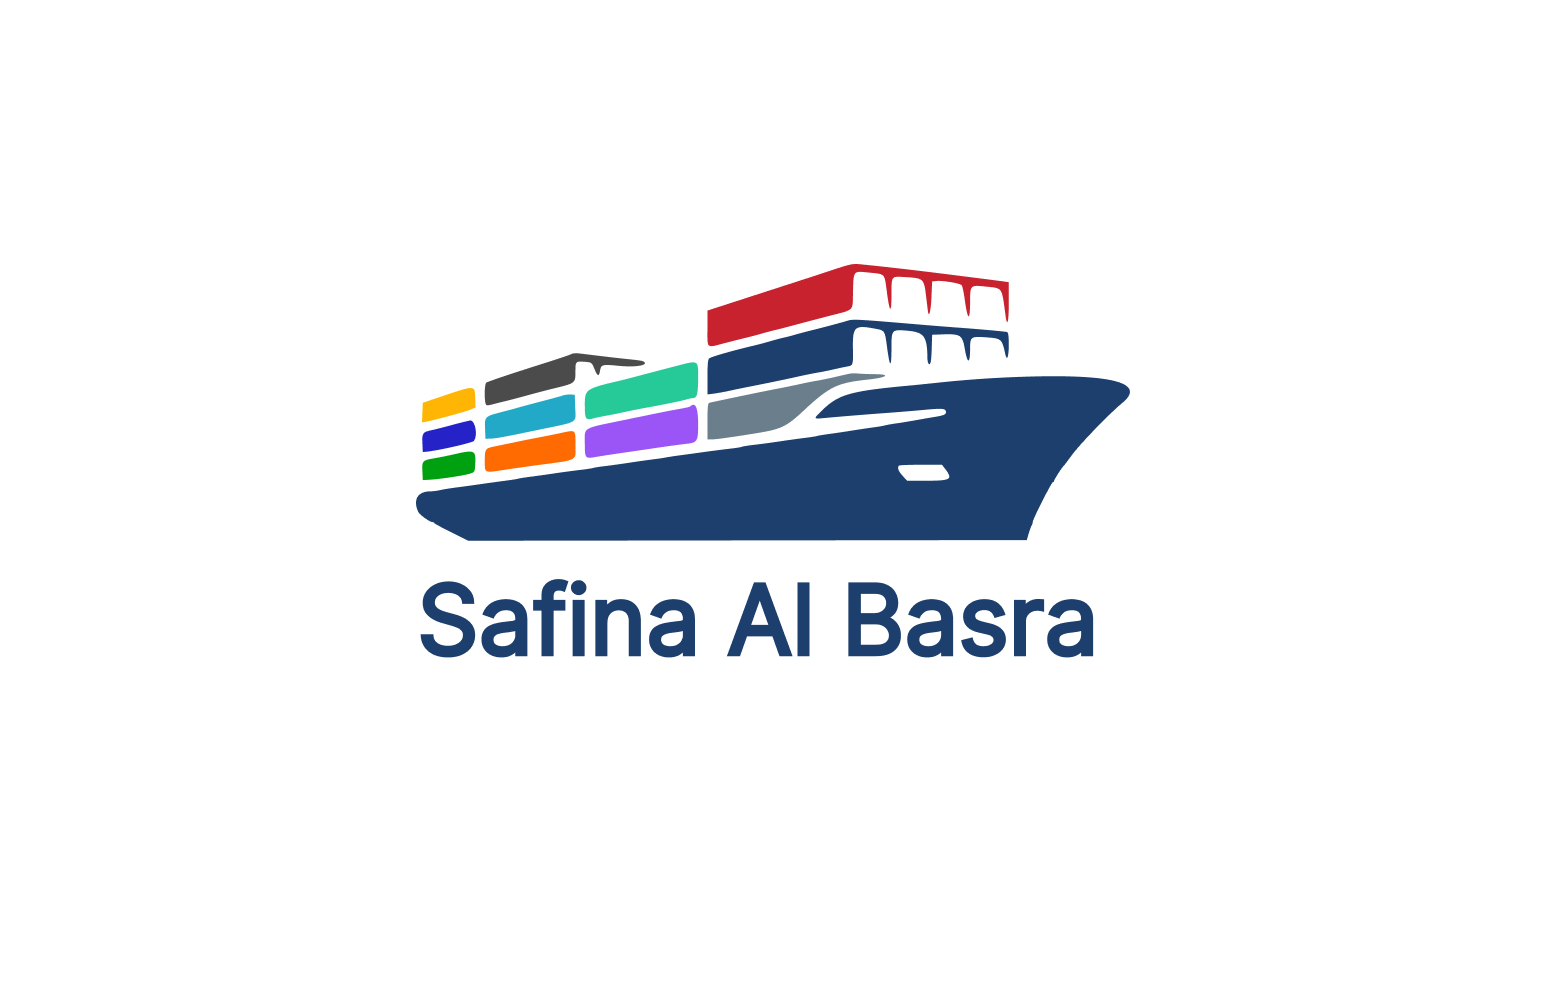 Safina Al Basra